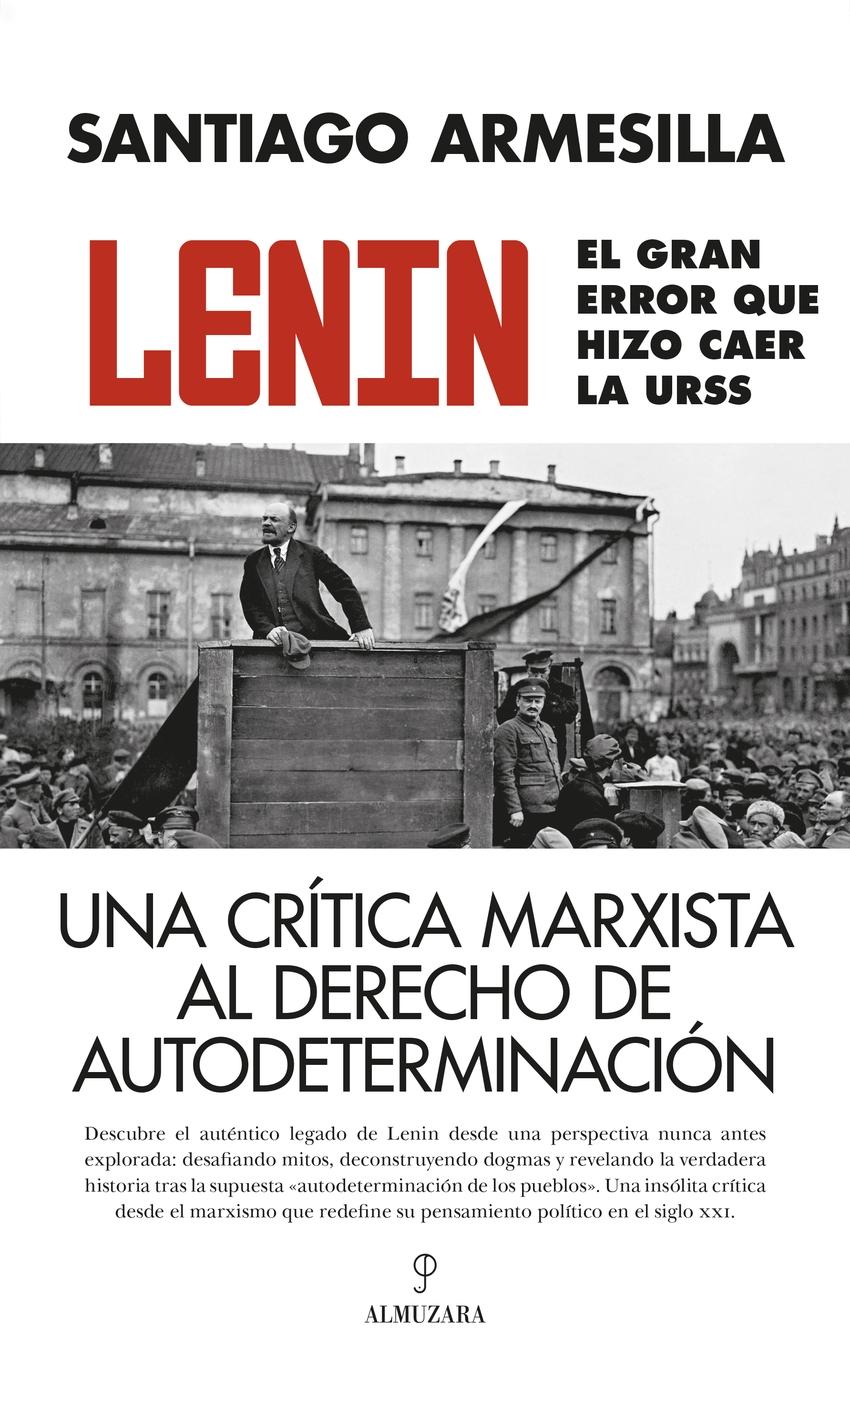 Lenin. El gran error que hizo caer la URSS "Una crítica marxista al derecho de autodeterminación"